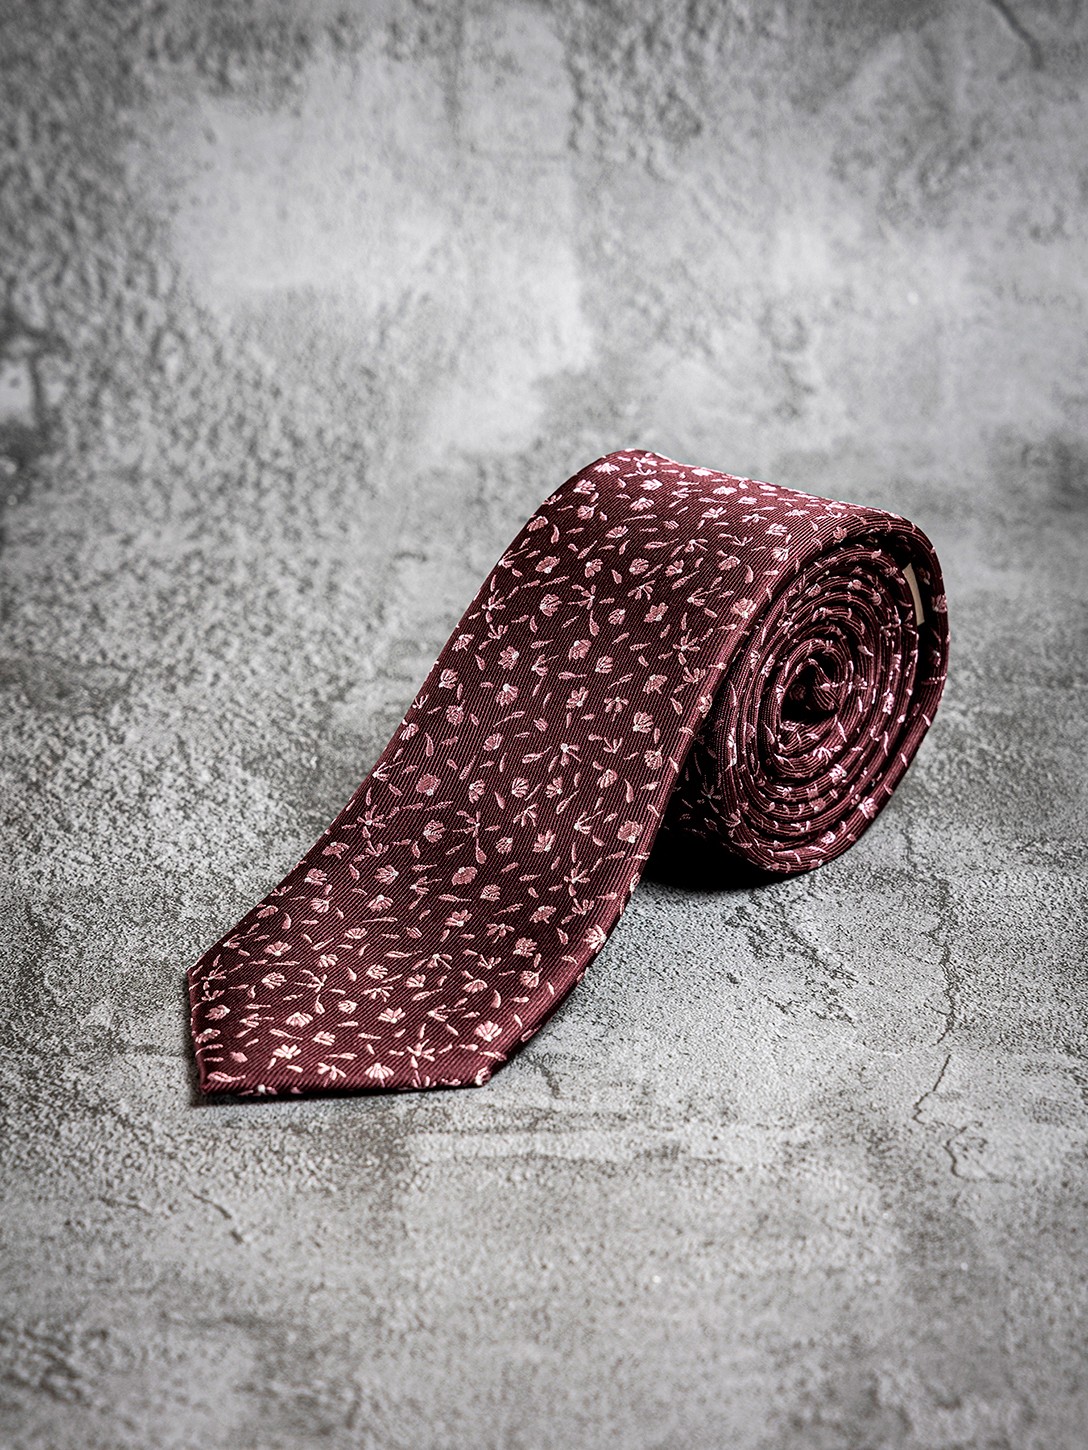 Cravate bordeaux jacquard...